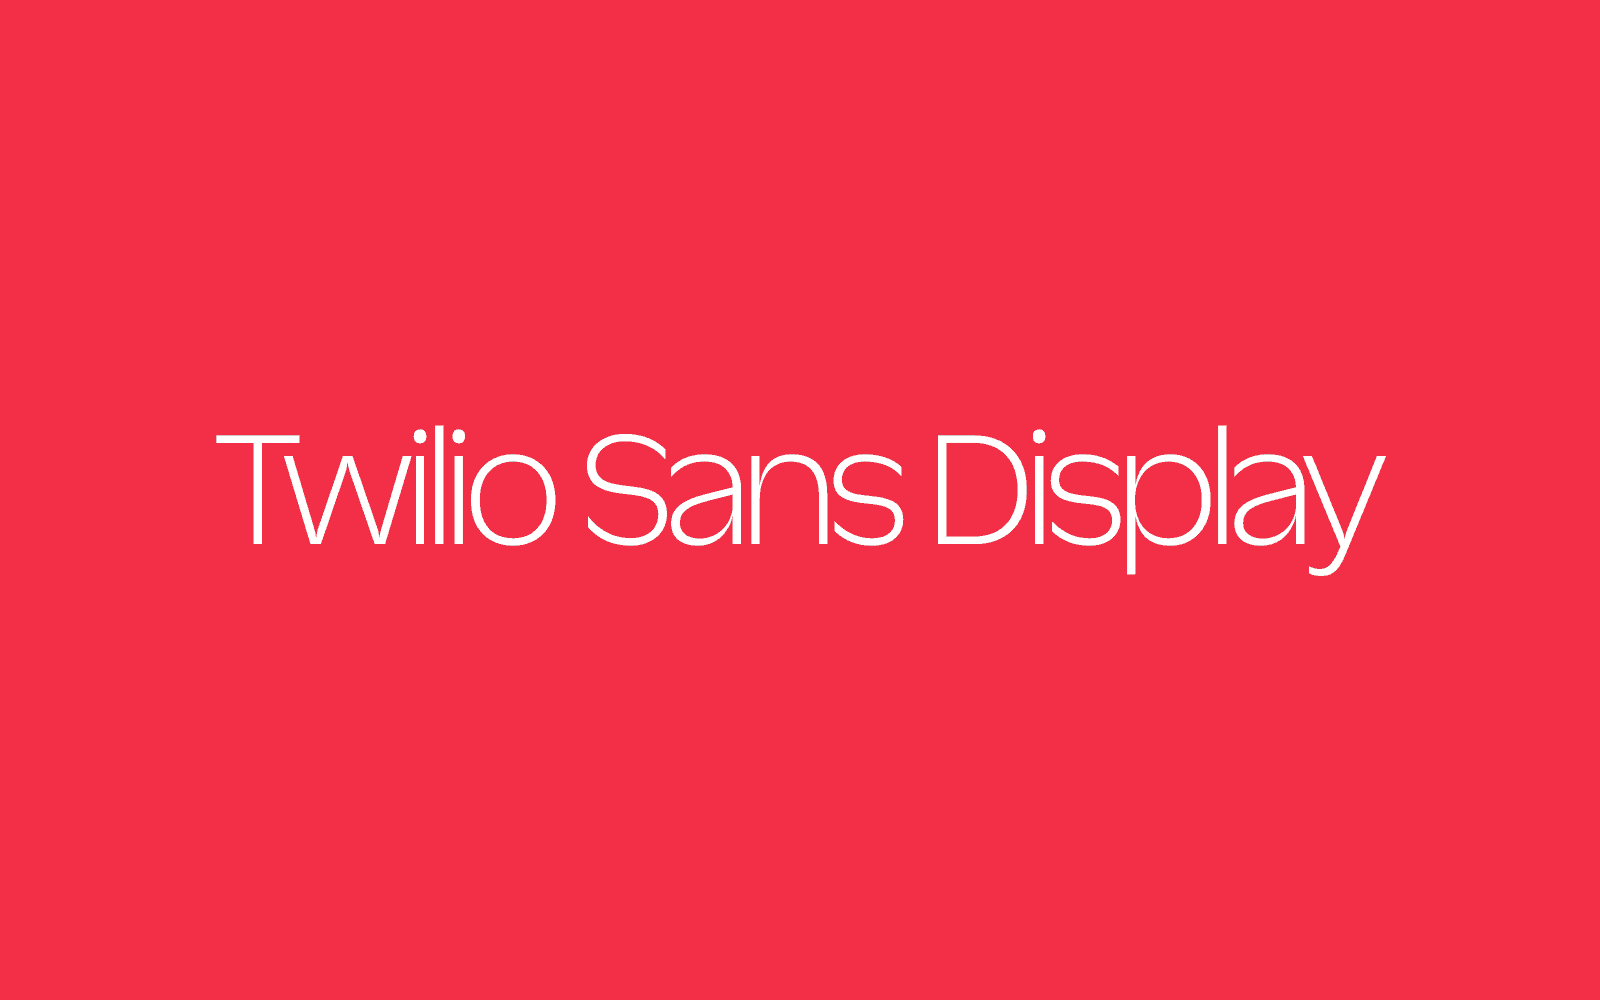 Twilio Sans Text, Display, and Mono